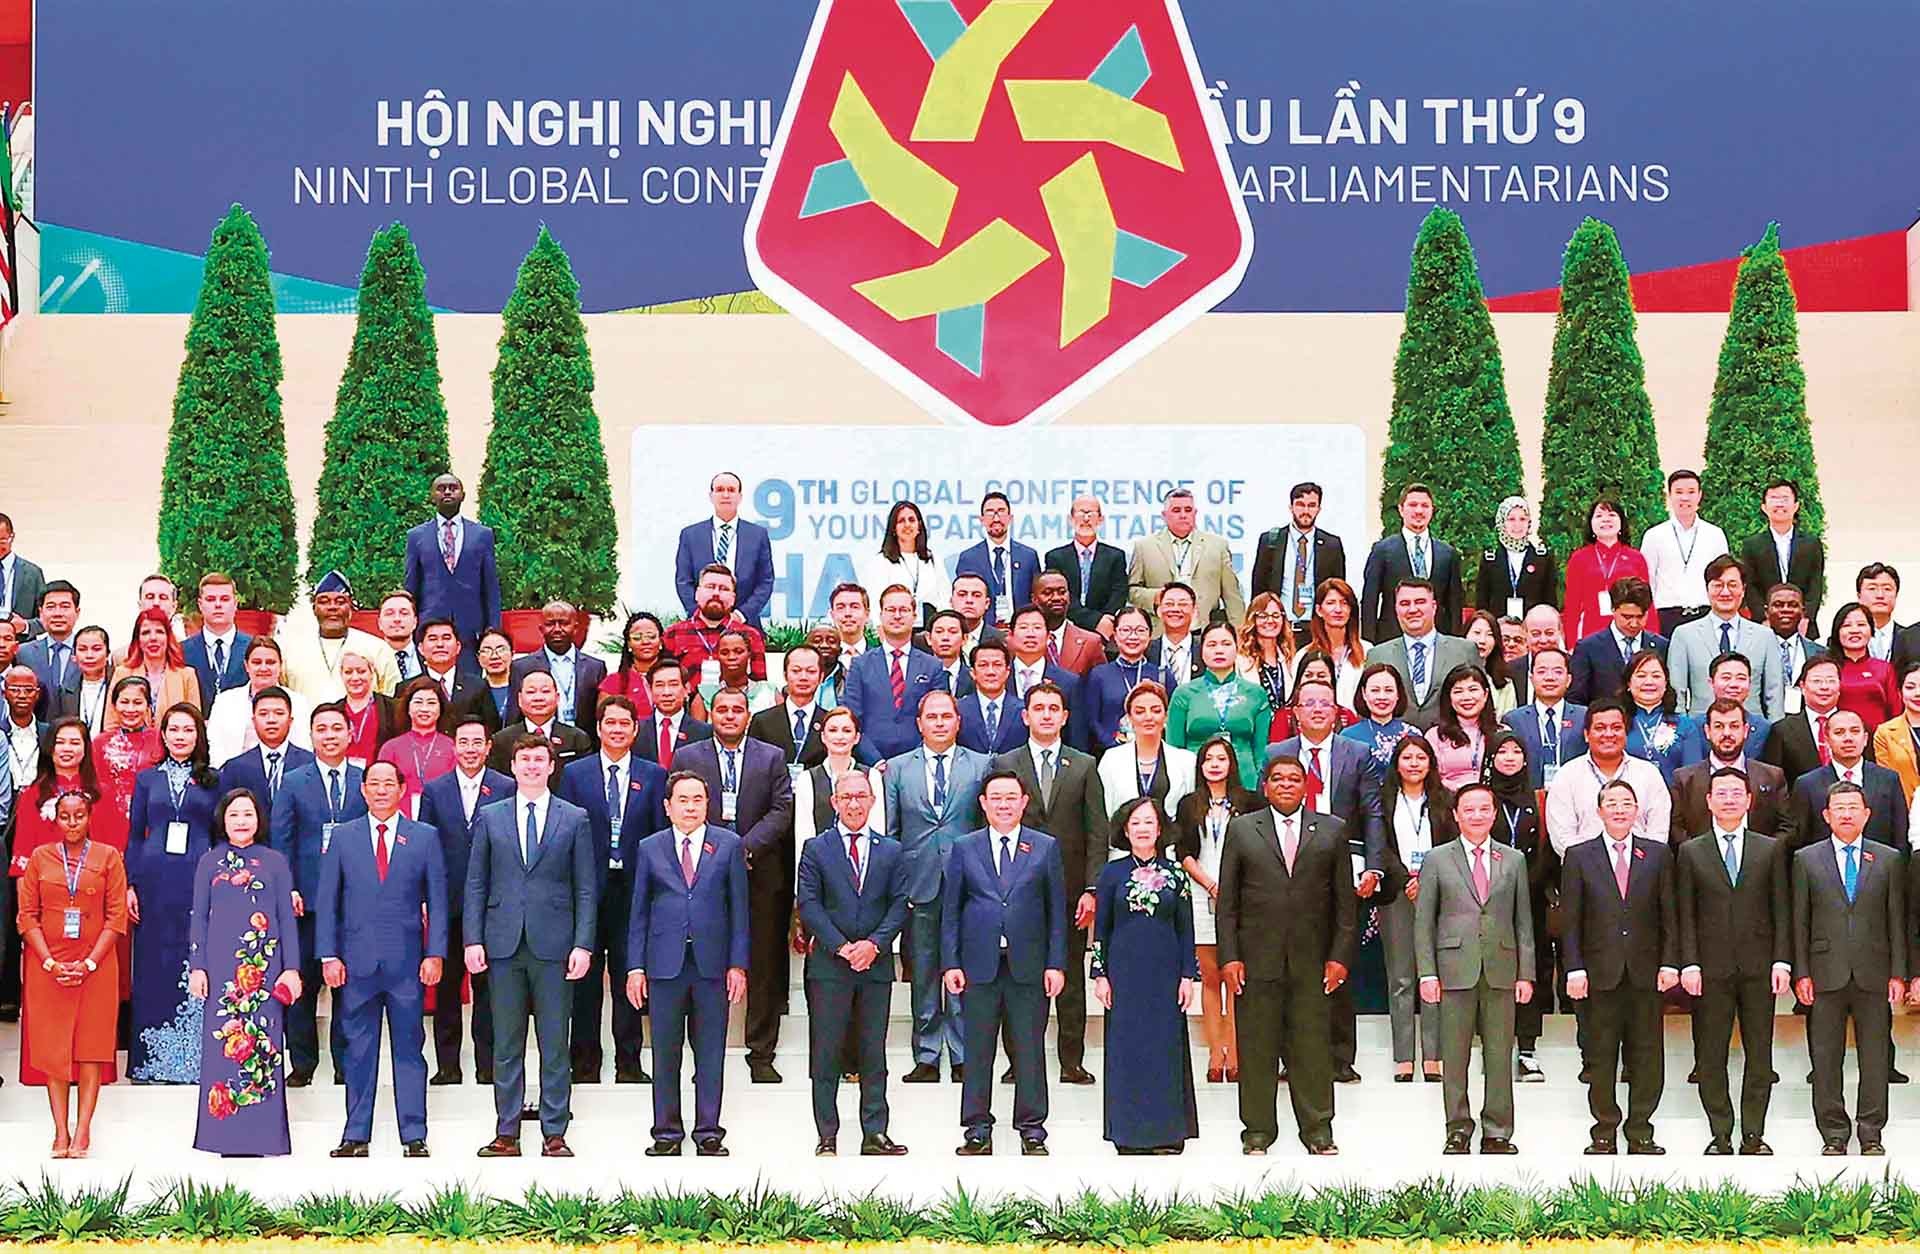 Hội nghị Nghị sĩ trẻ toàn cầu lần thứ 9 được tổ chức thành công (tháng 9/2023) tại Việt Nam là một kết quả quan trọng của hoạt động Quốc hội Việt Nam trong năm 2023.